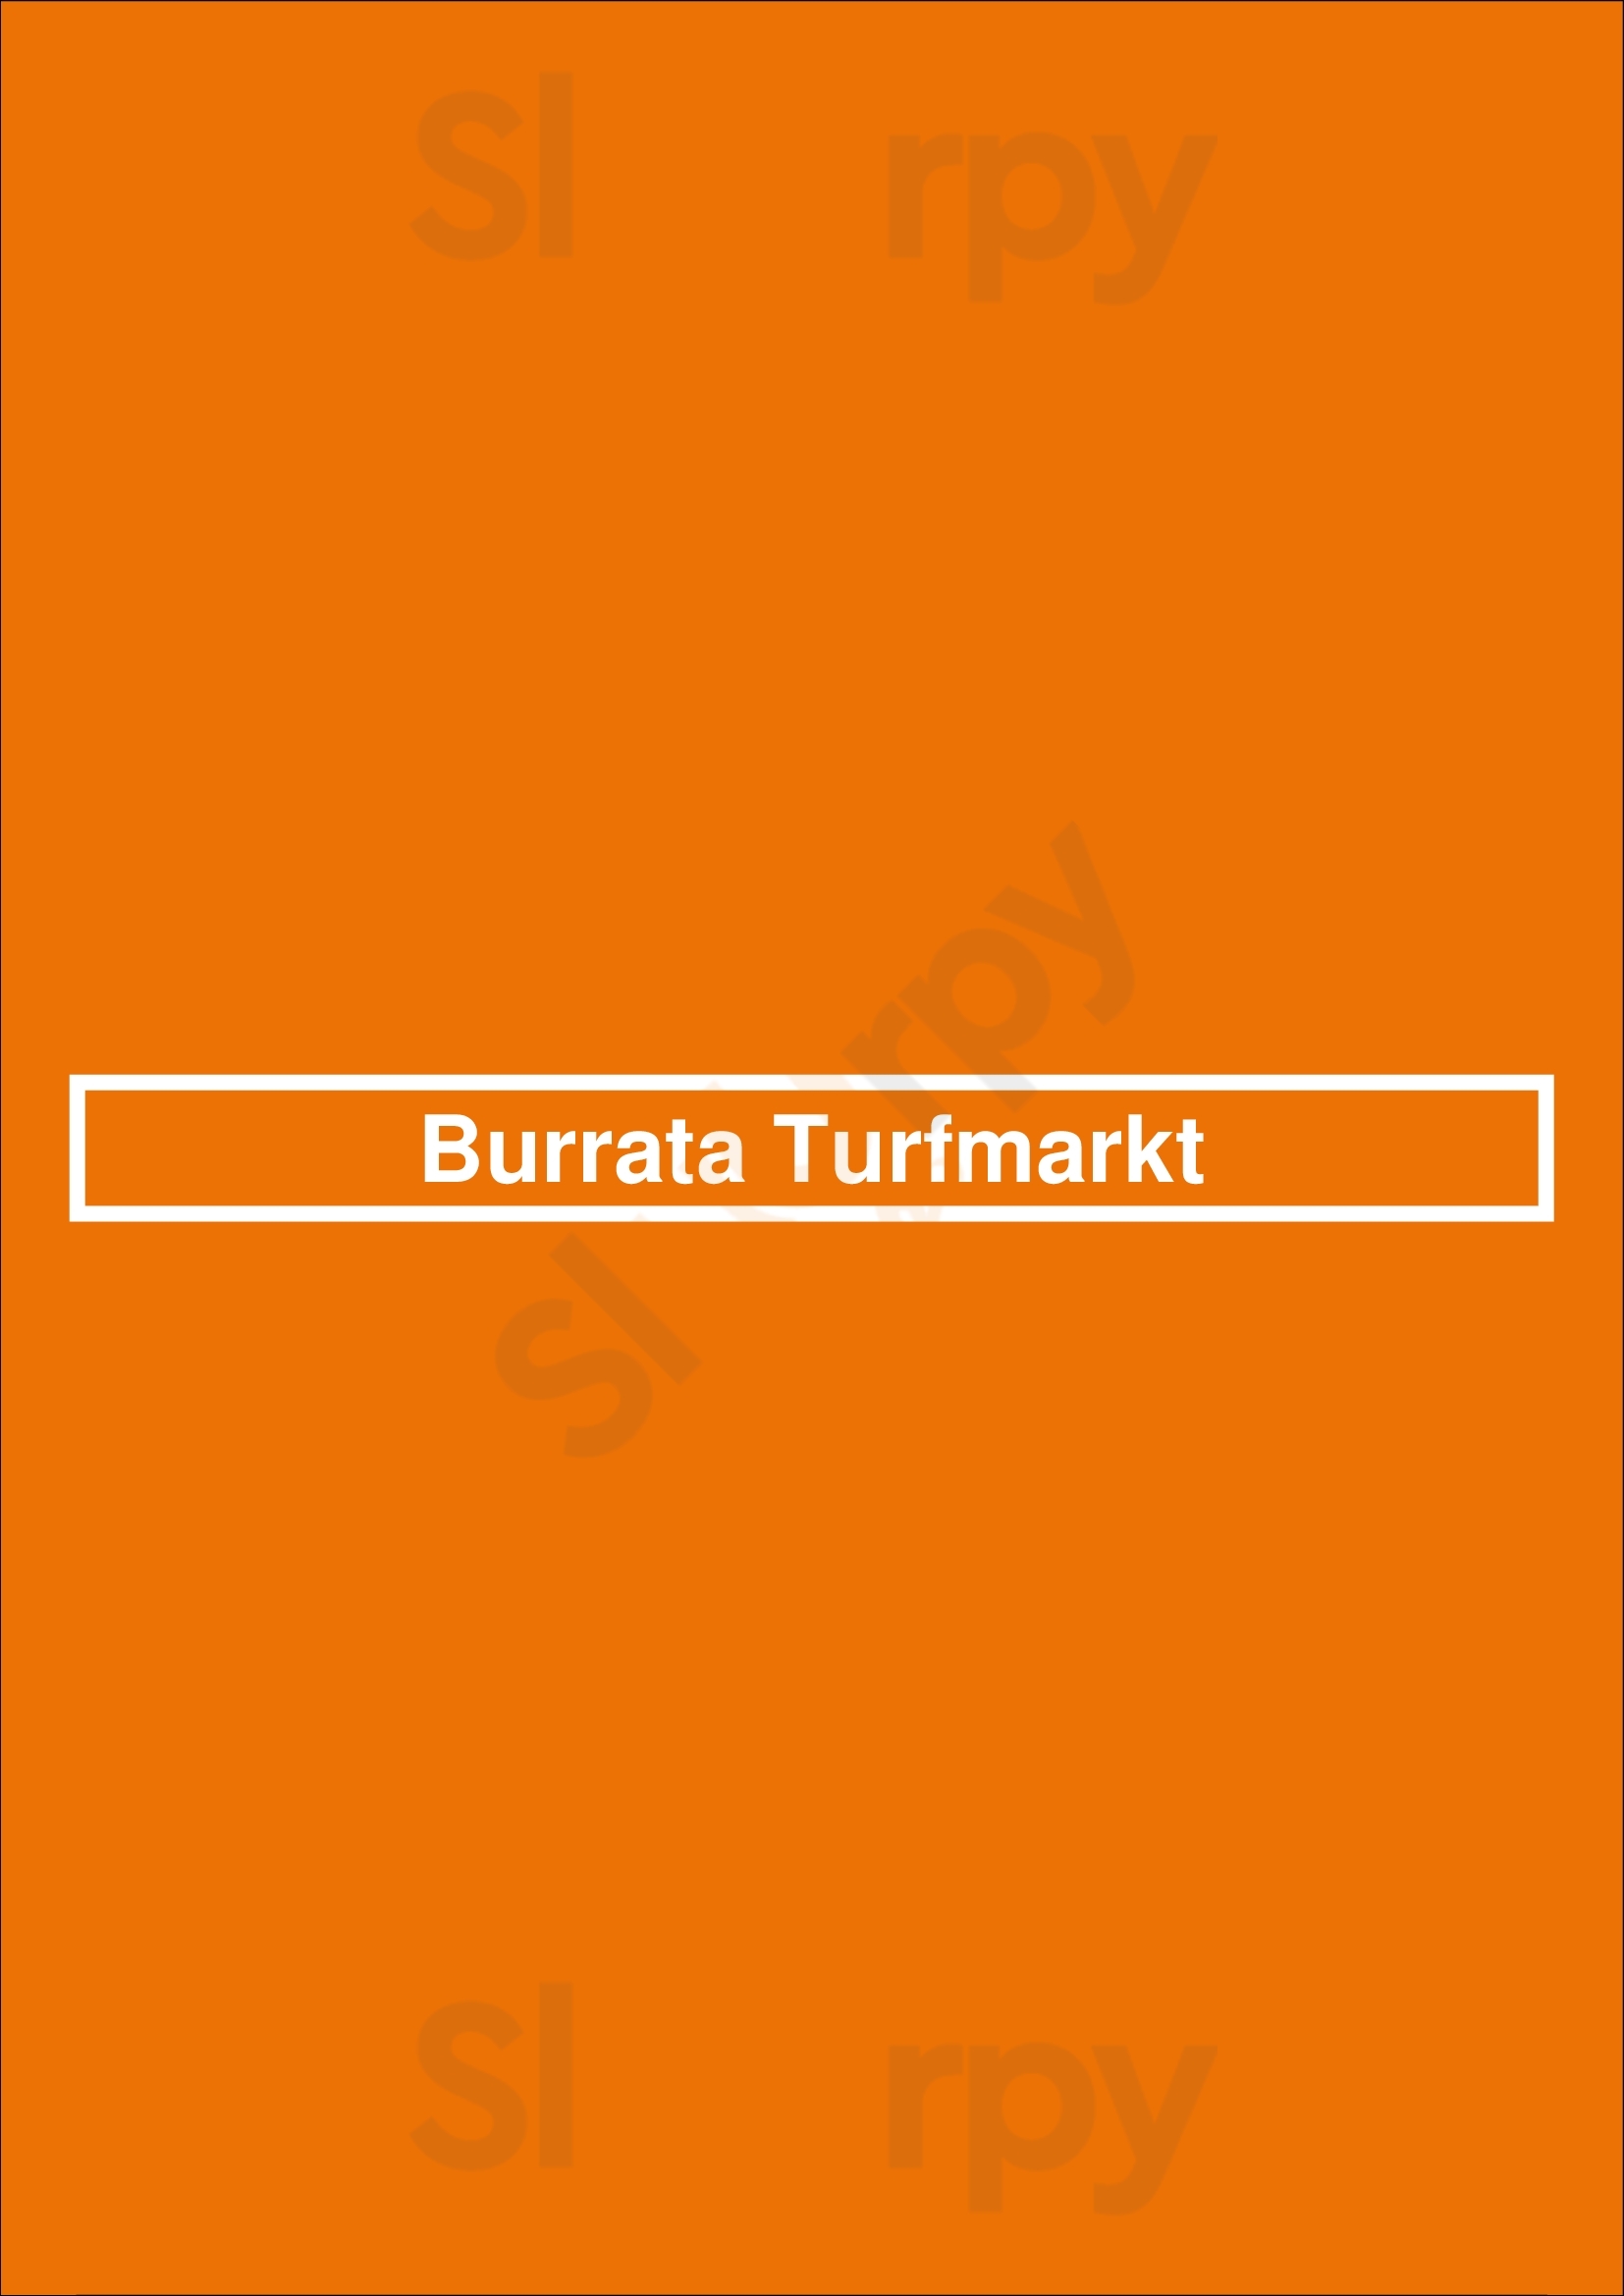 Burrata Turfmarkt Den Haag Menu - 1